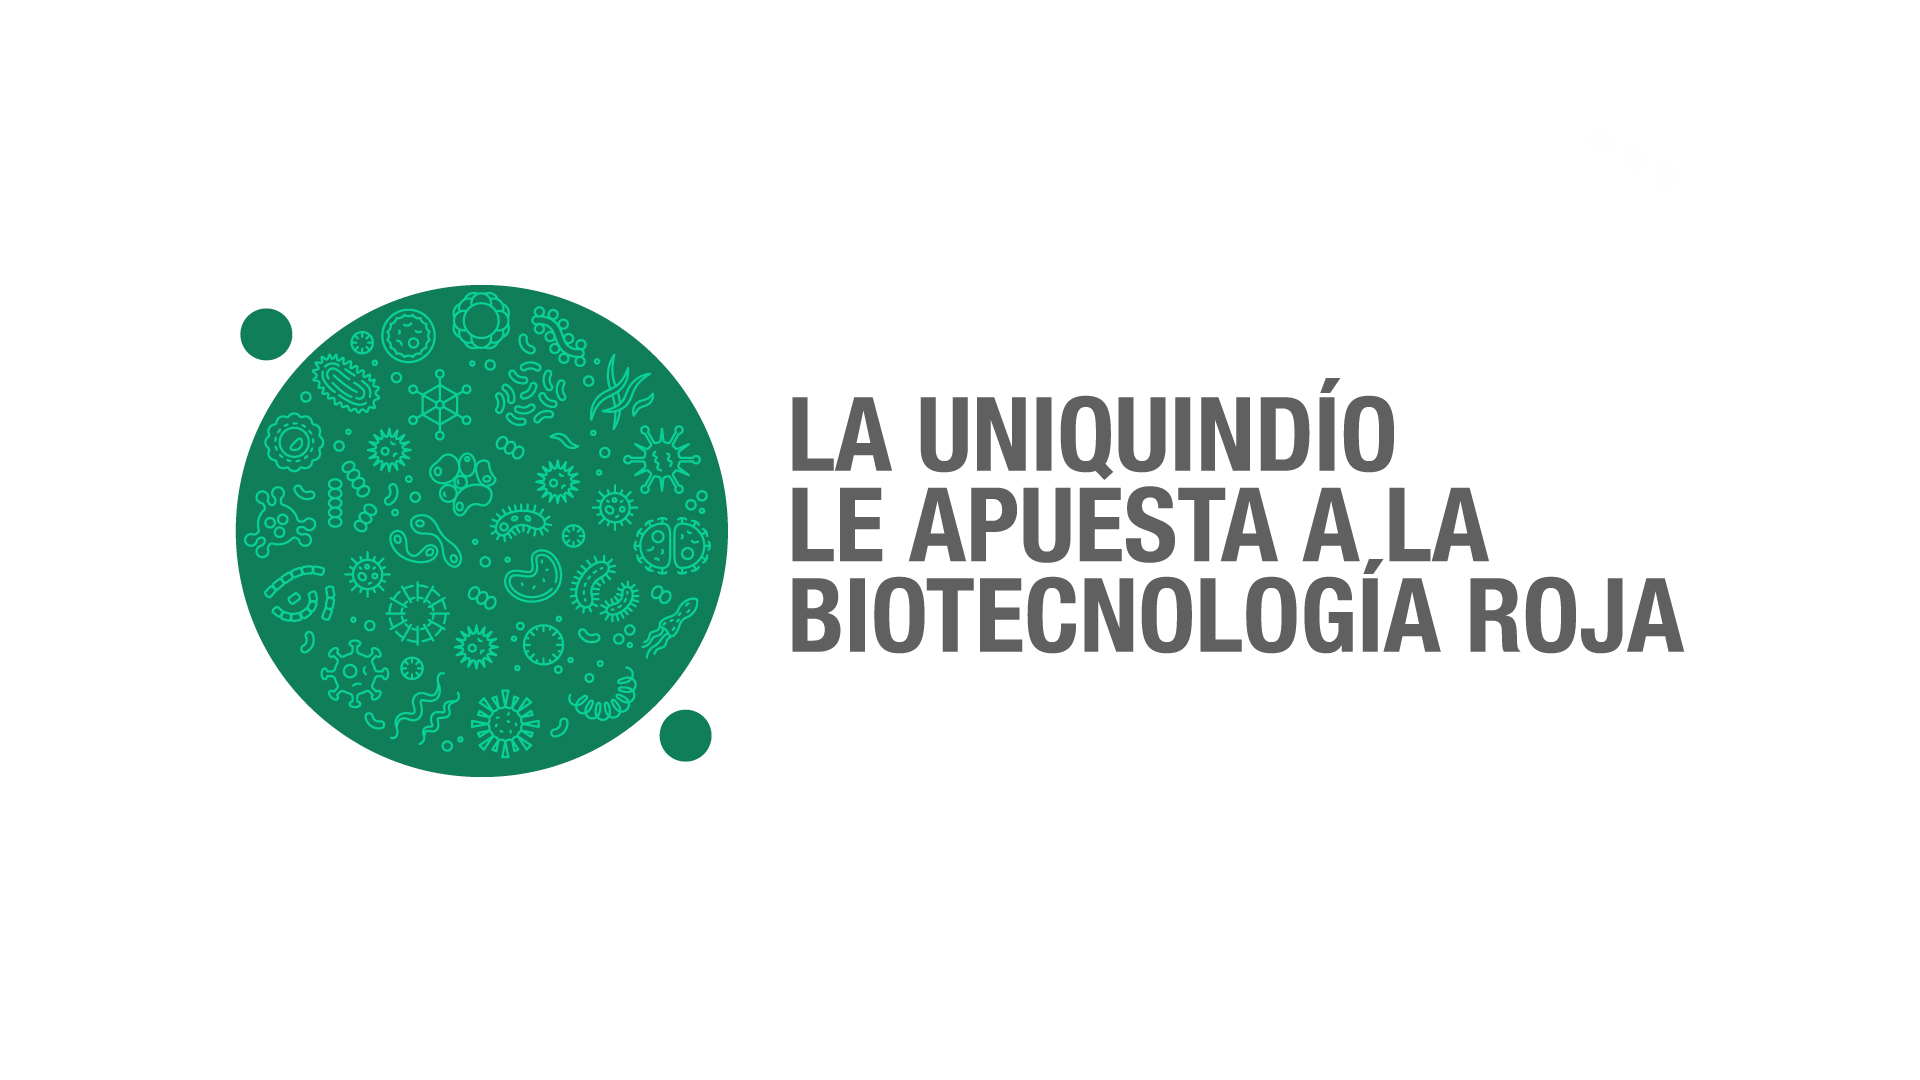 Investigadores uniquindianos se acercan a posible tratamiento para la toxoplasmosis a partir de la biotecnología roja